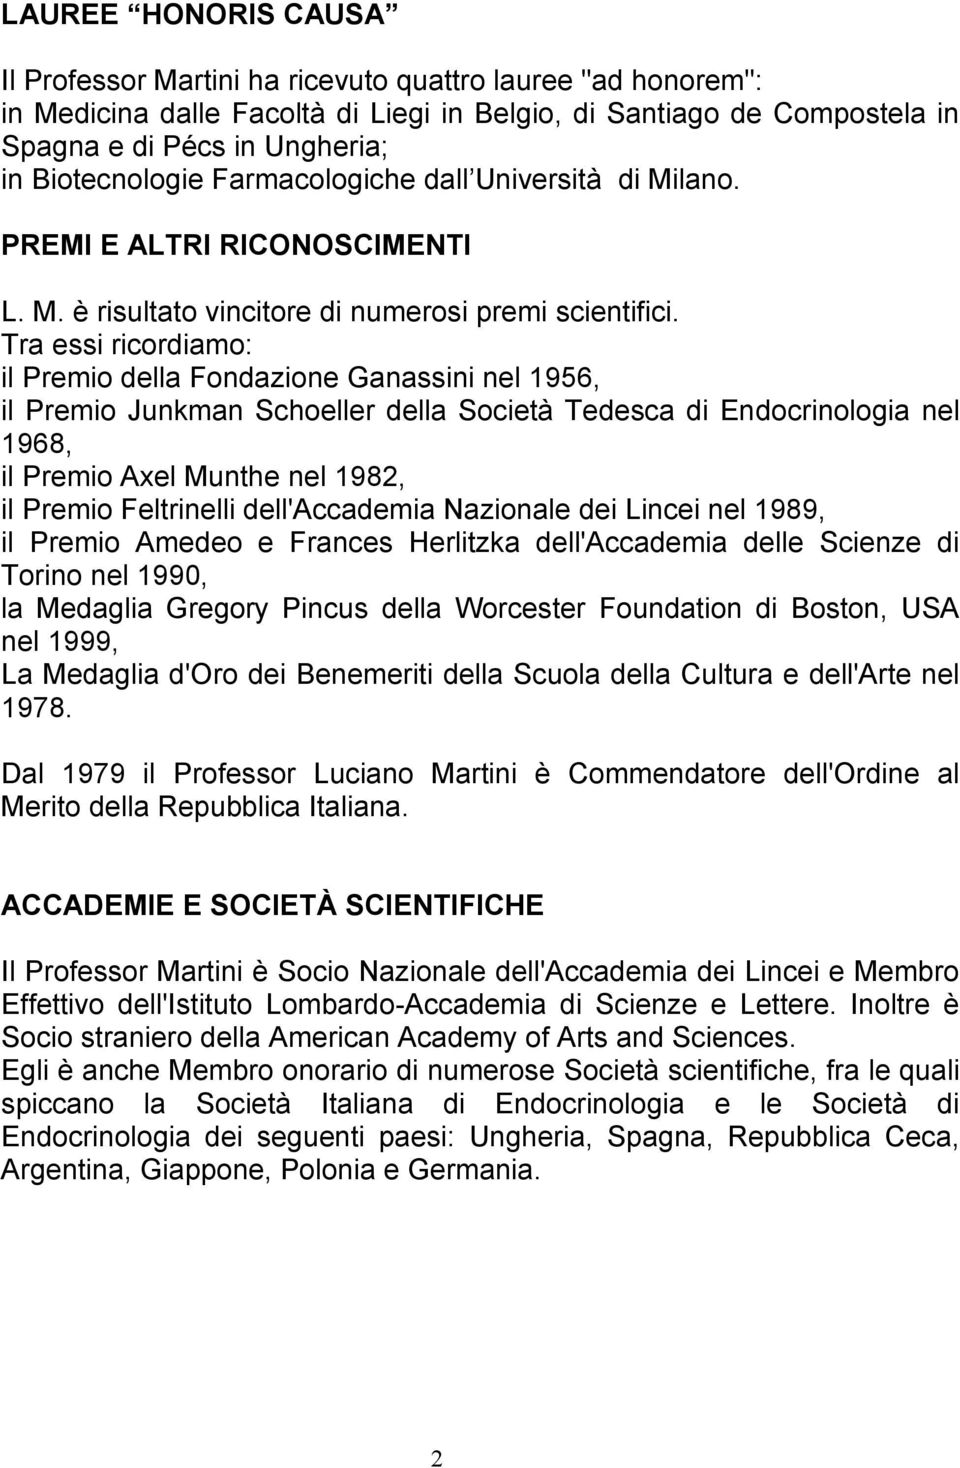 Tra essi ricordiamo: il Premio della Fondazione Ganassini nel 1956, il Premio Junkman Schoeller della Società Tedesca di Endocrinologia nel 1968, il Premio Axel Munthe nel 1982, il Premio Feltrinelli